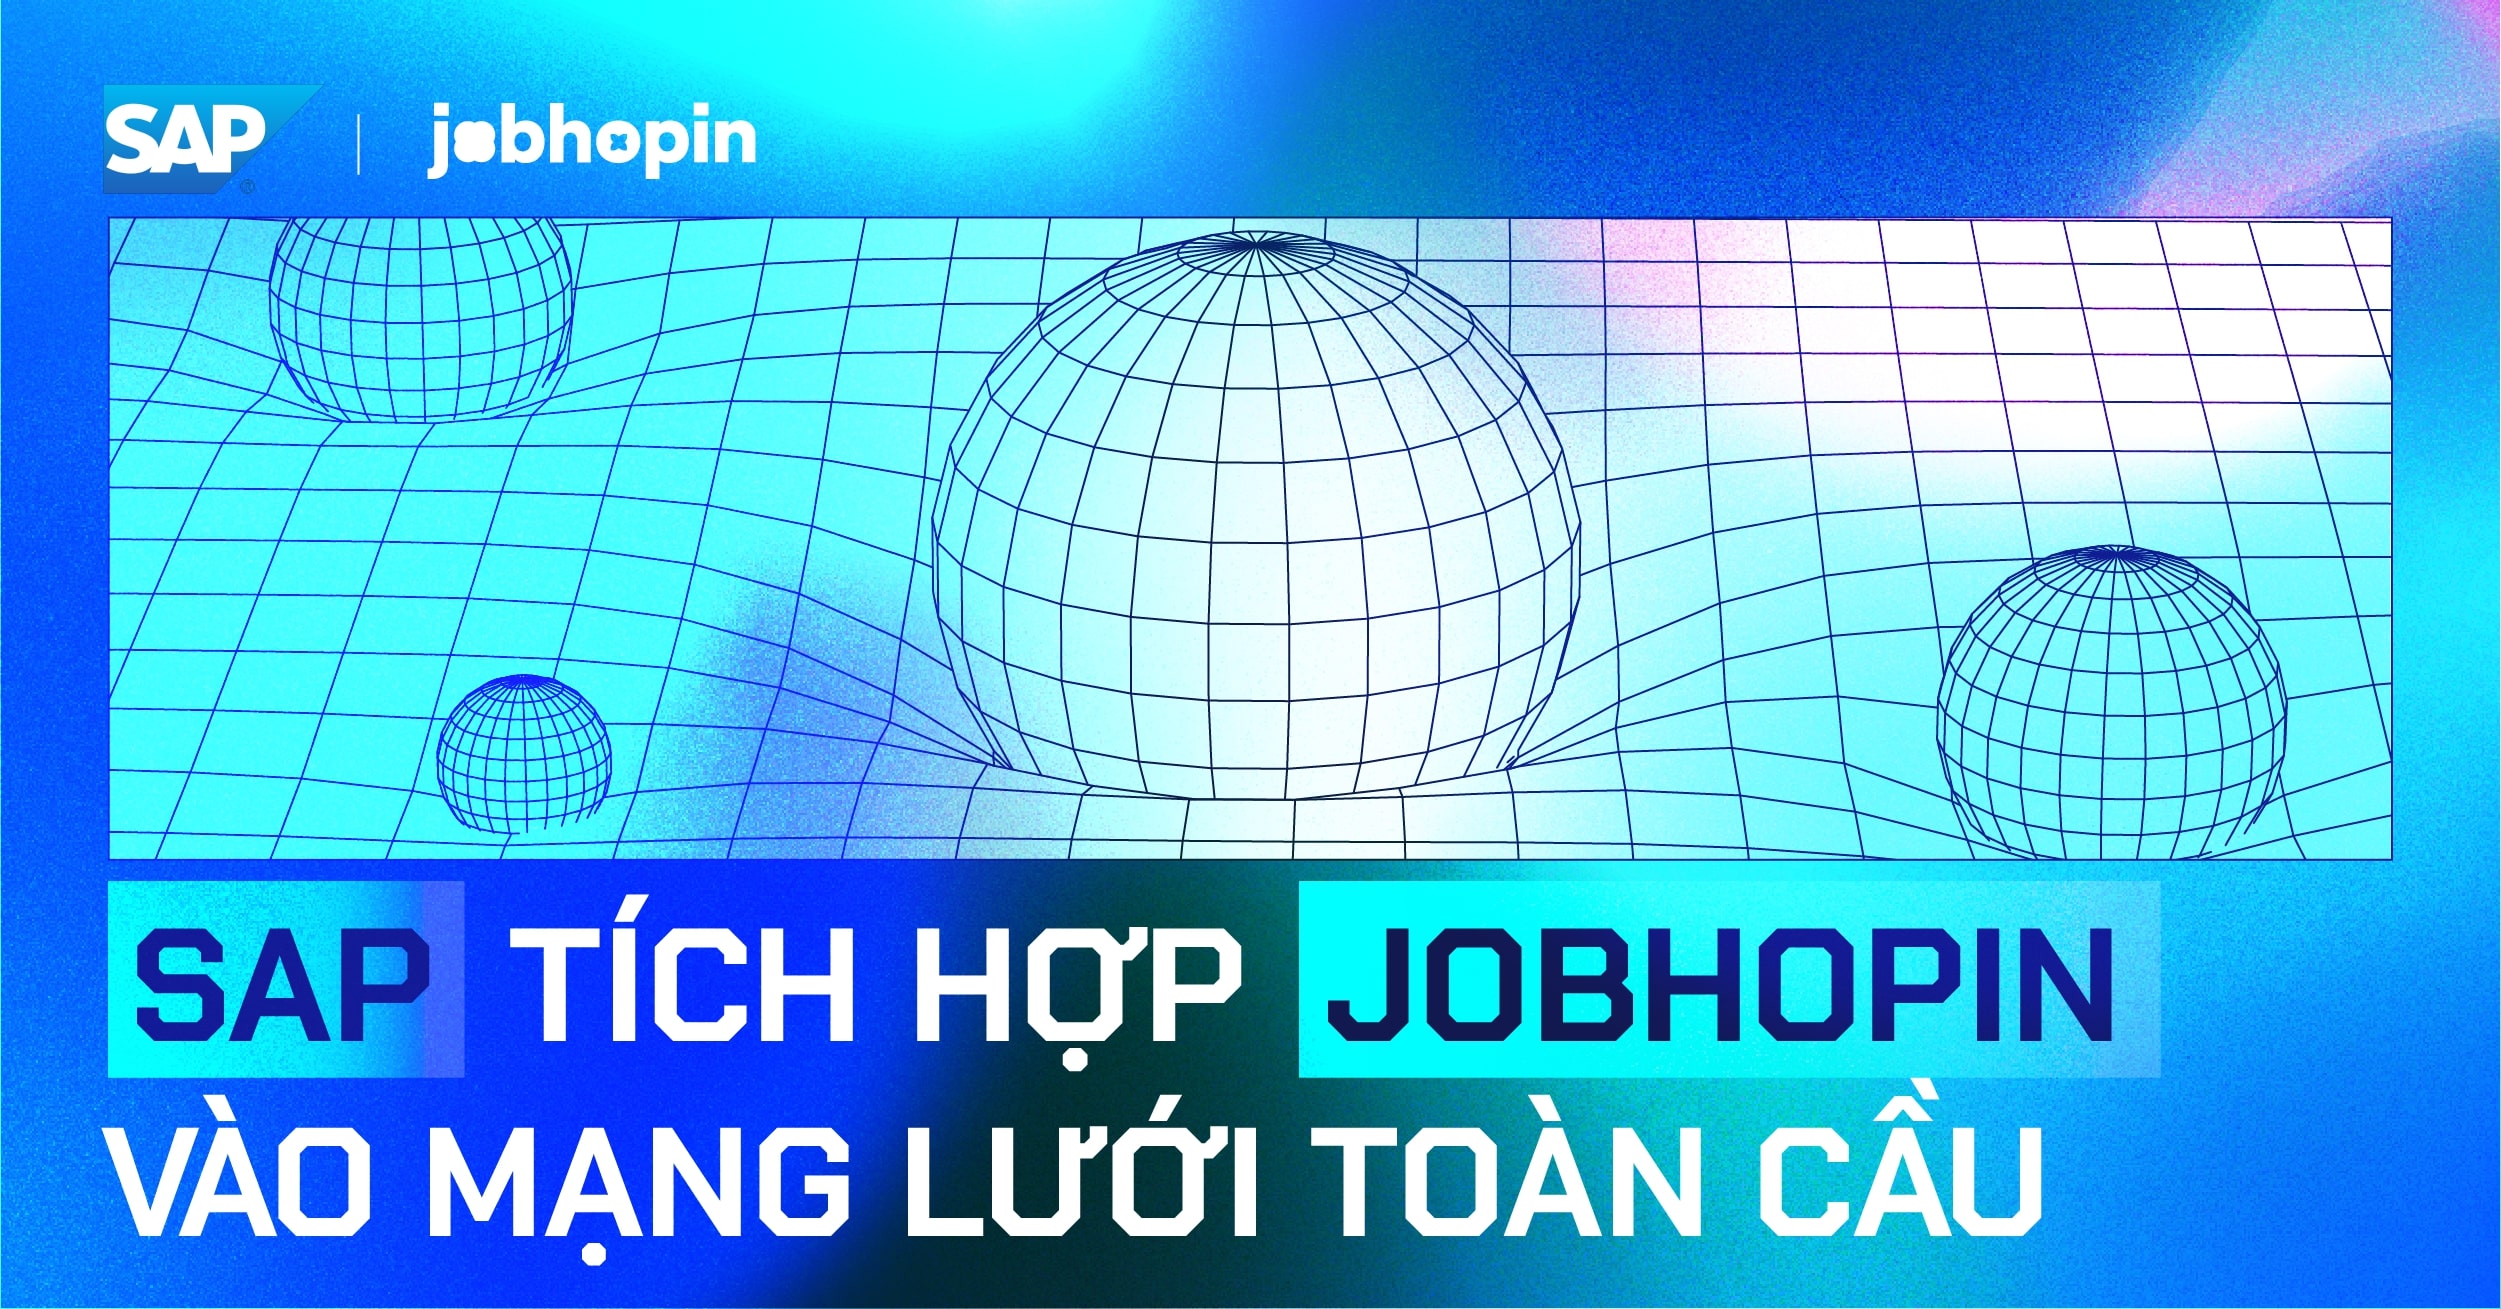 SAP toàn cầu chính thức tích hợp JobHopin thành giải pháp tuyển dụng đầu tiên từ Việt Nam